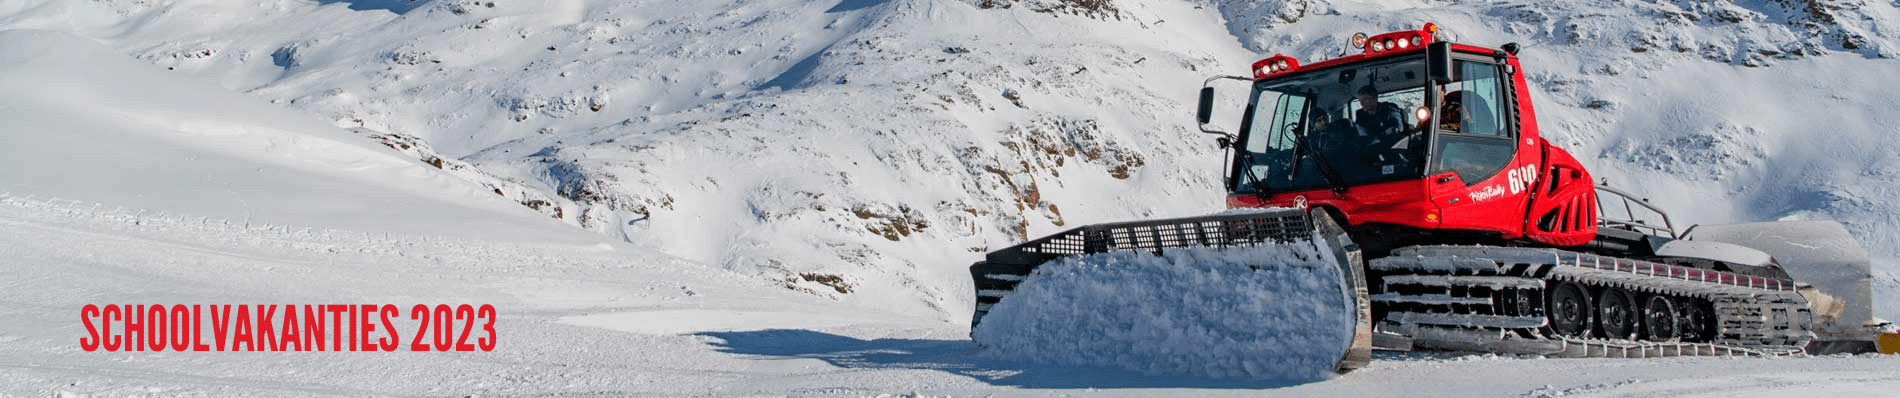 SKI SCHOOLVAKANTIES wintersport vakantie sneeuw Franse Alpen